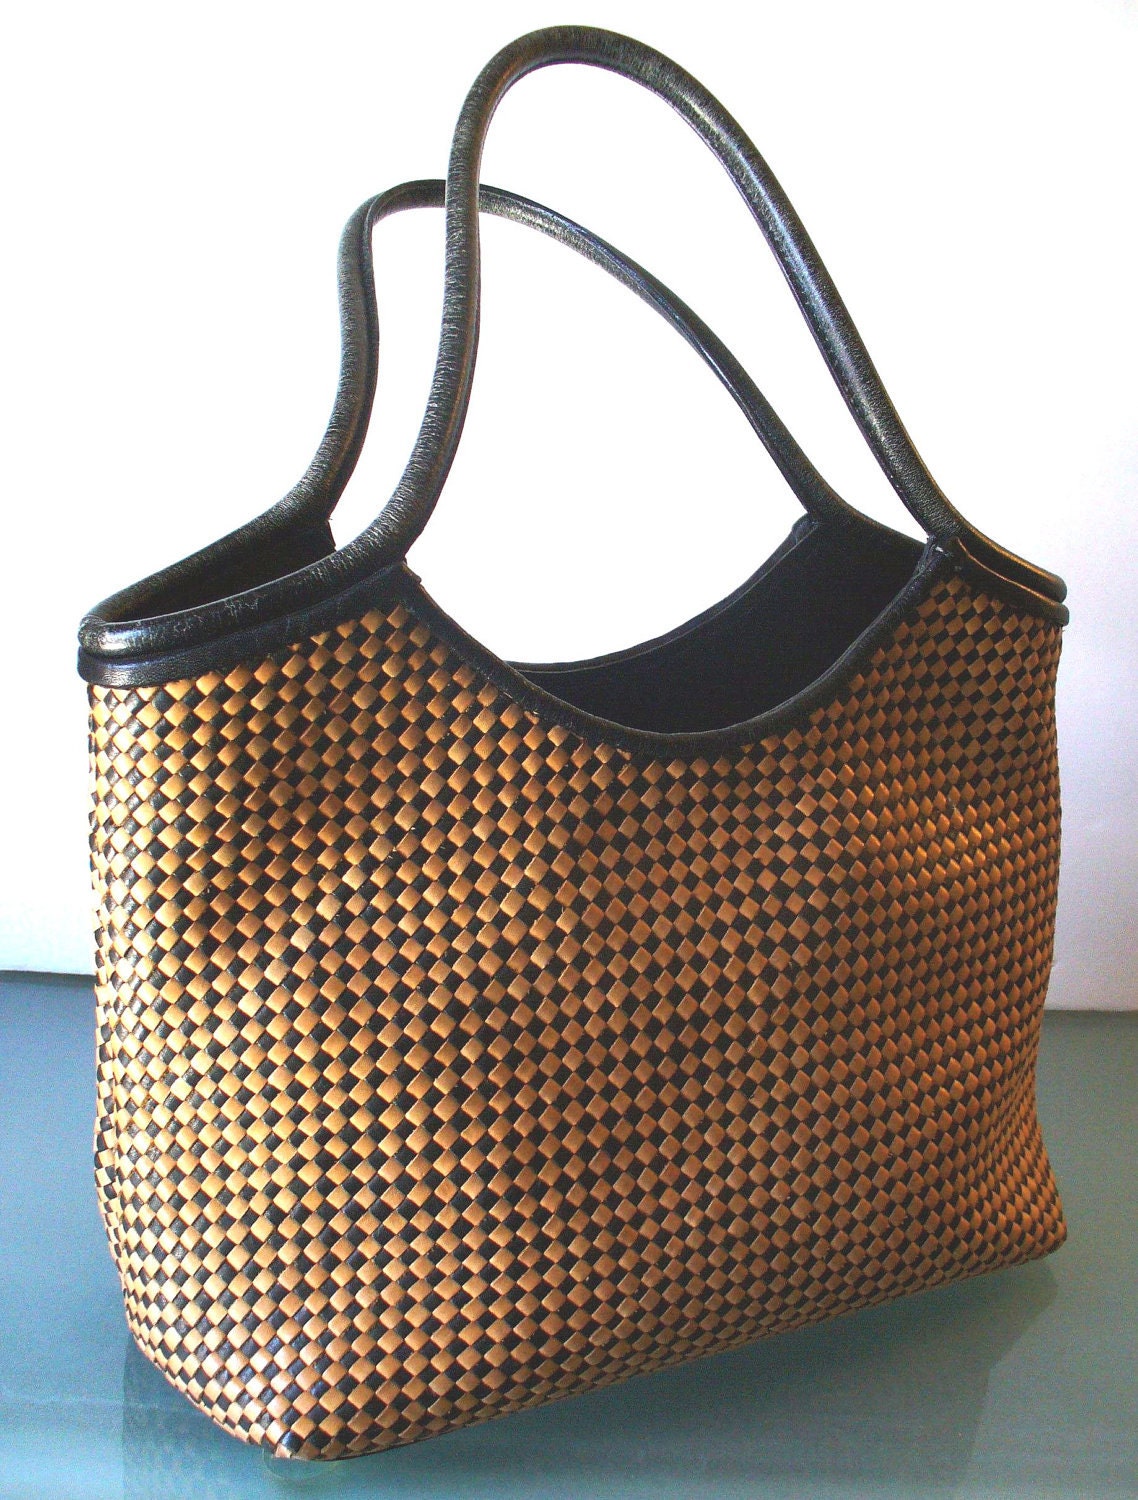 Paolo Masi Made in Italy Woven Leather Handbag by EurotrashItaly